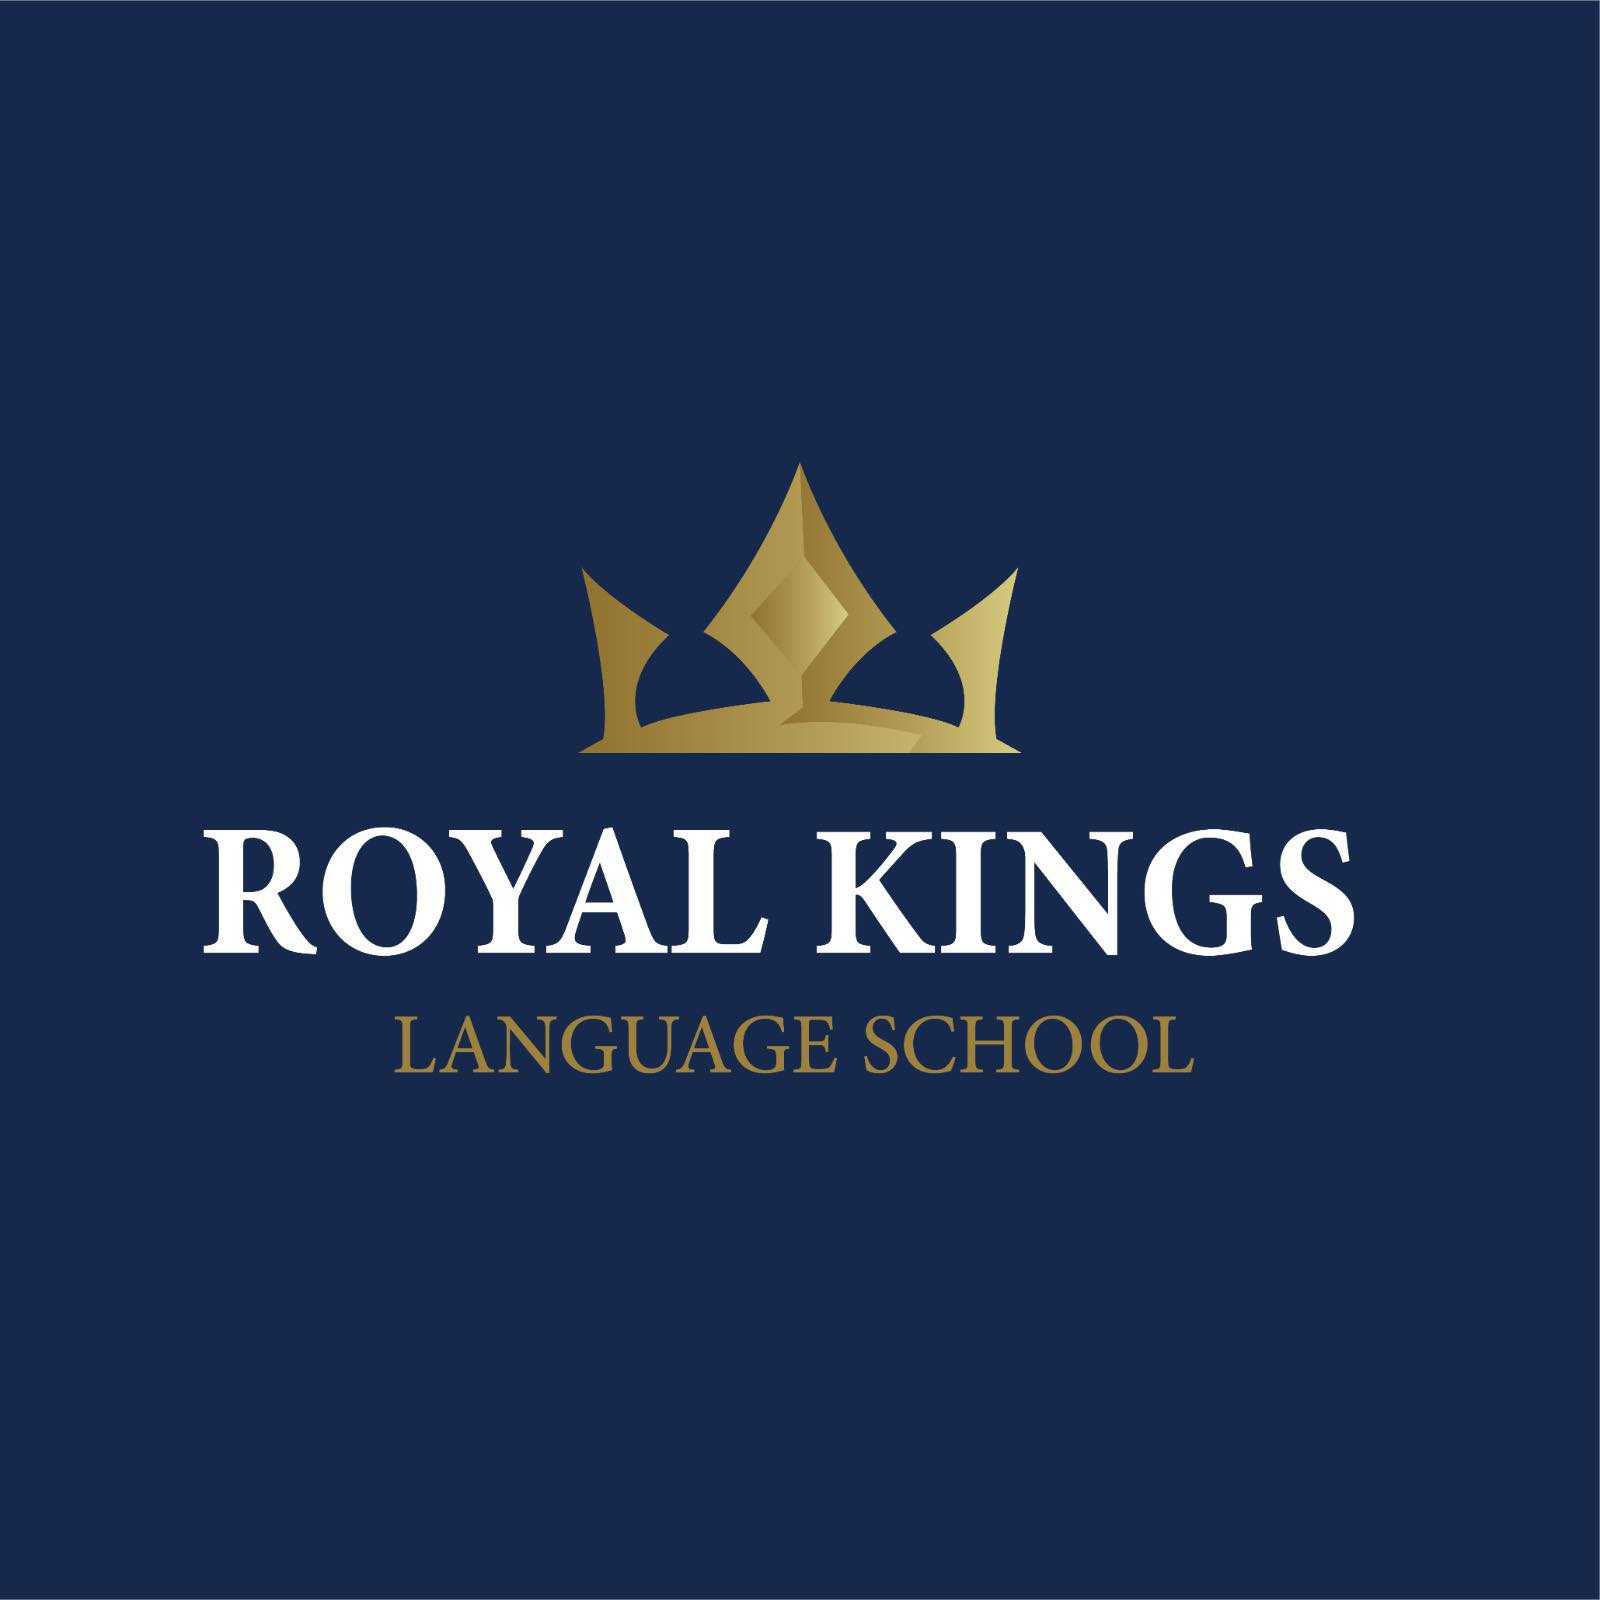 Royal Kings School